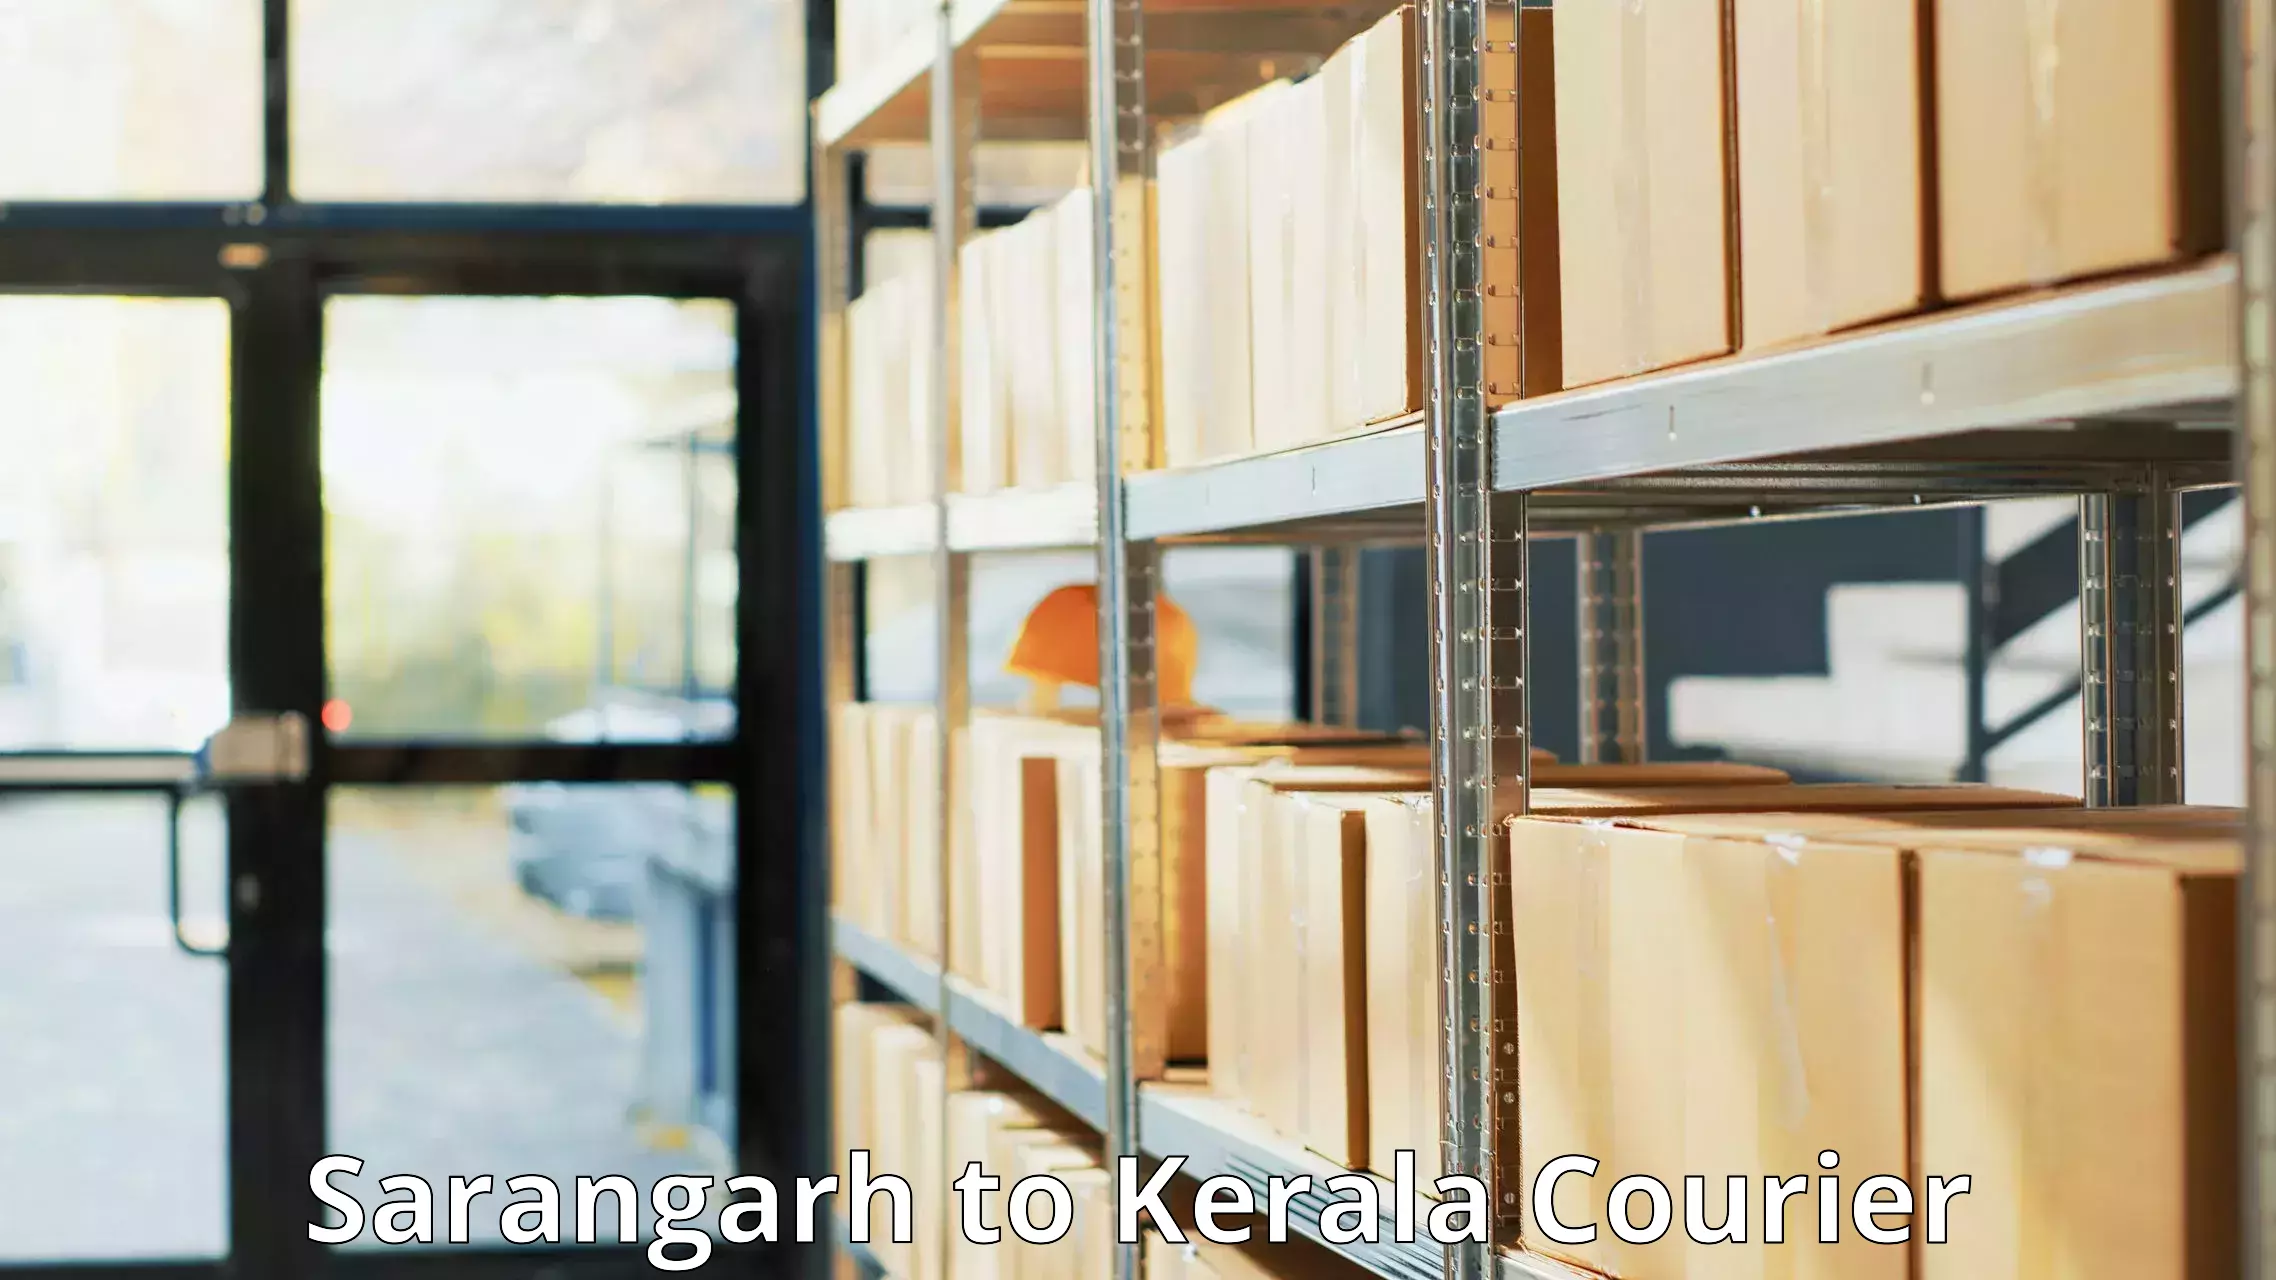 Express logistics providers Sarangarh to Kerala